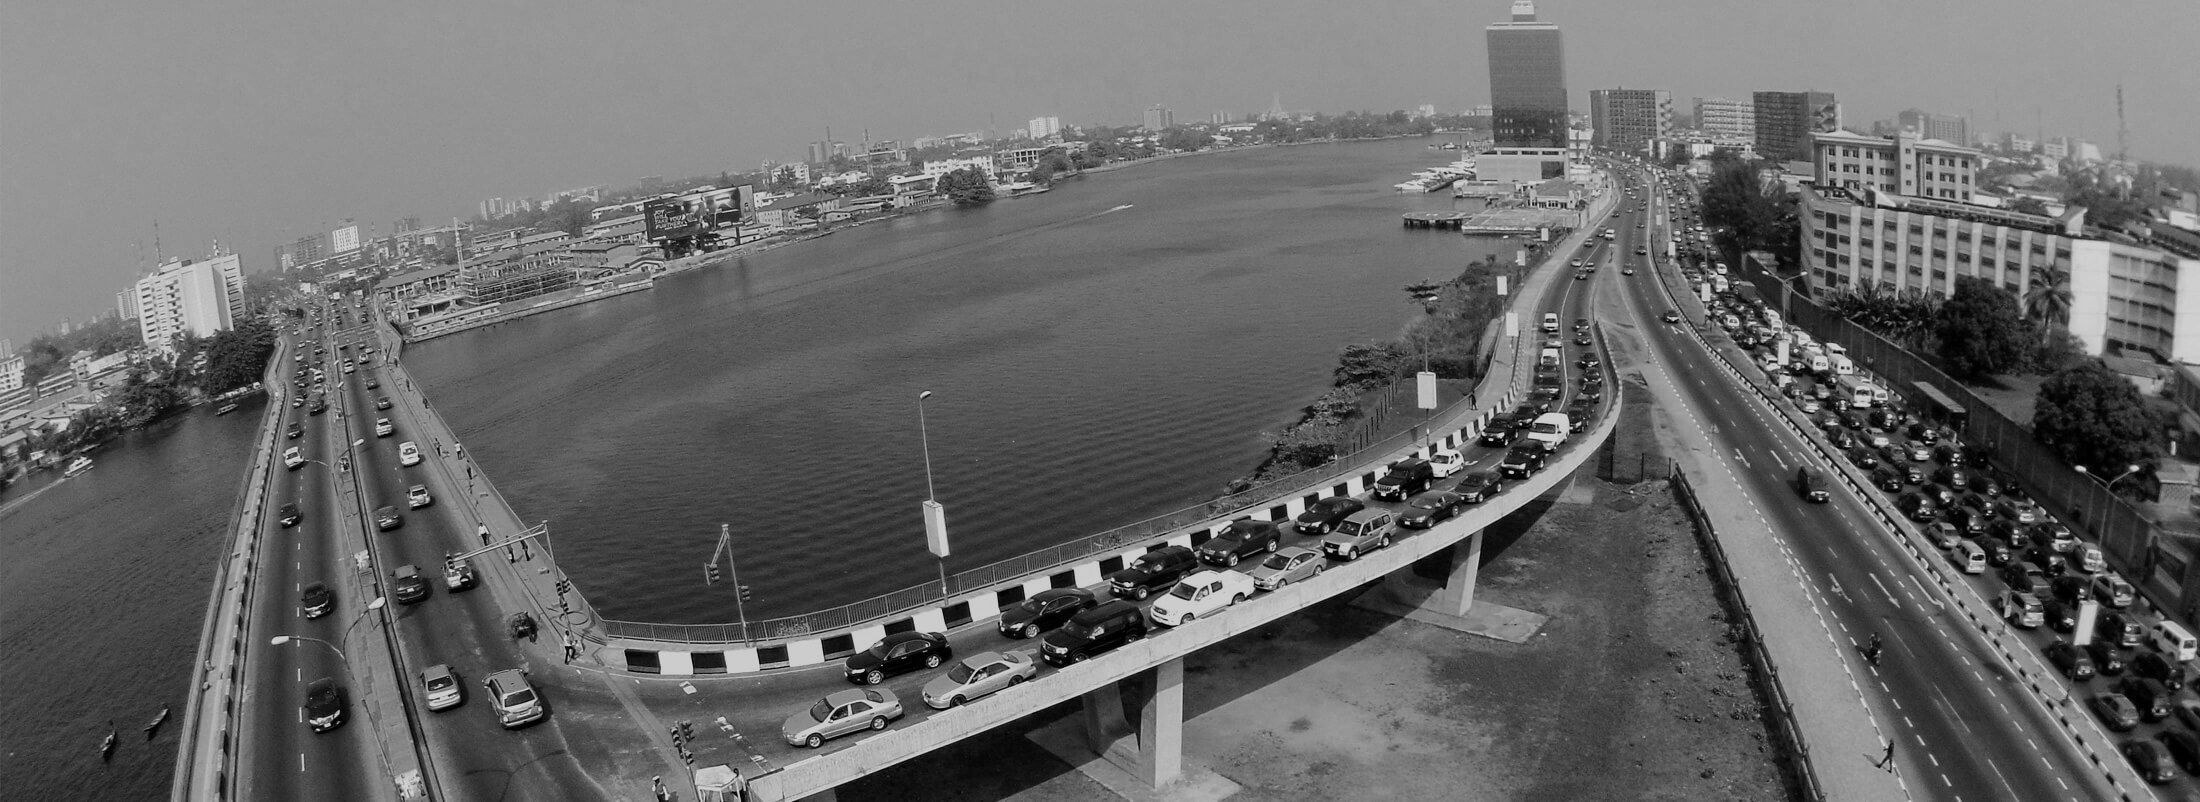 Lagos Falomo